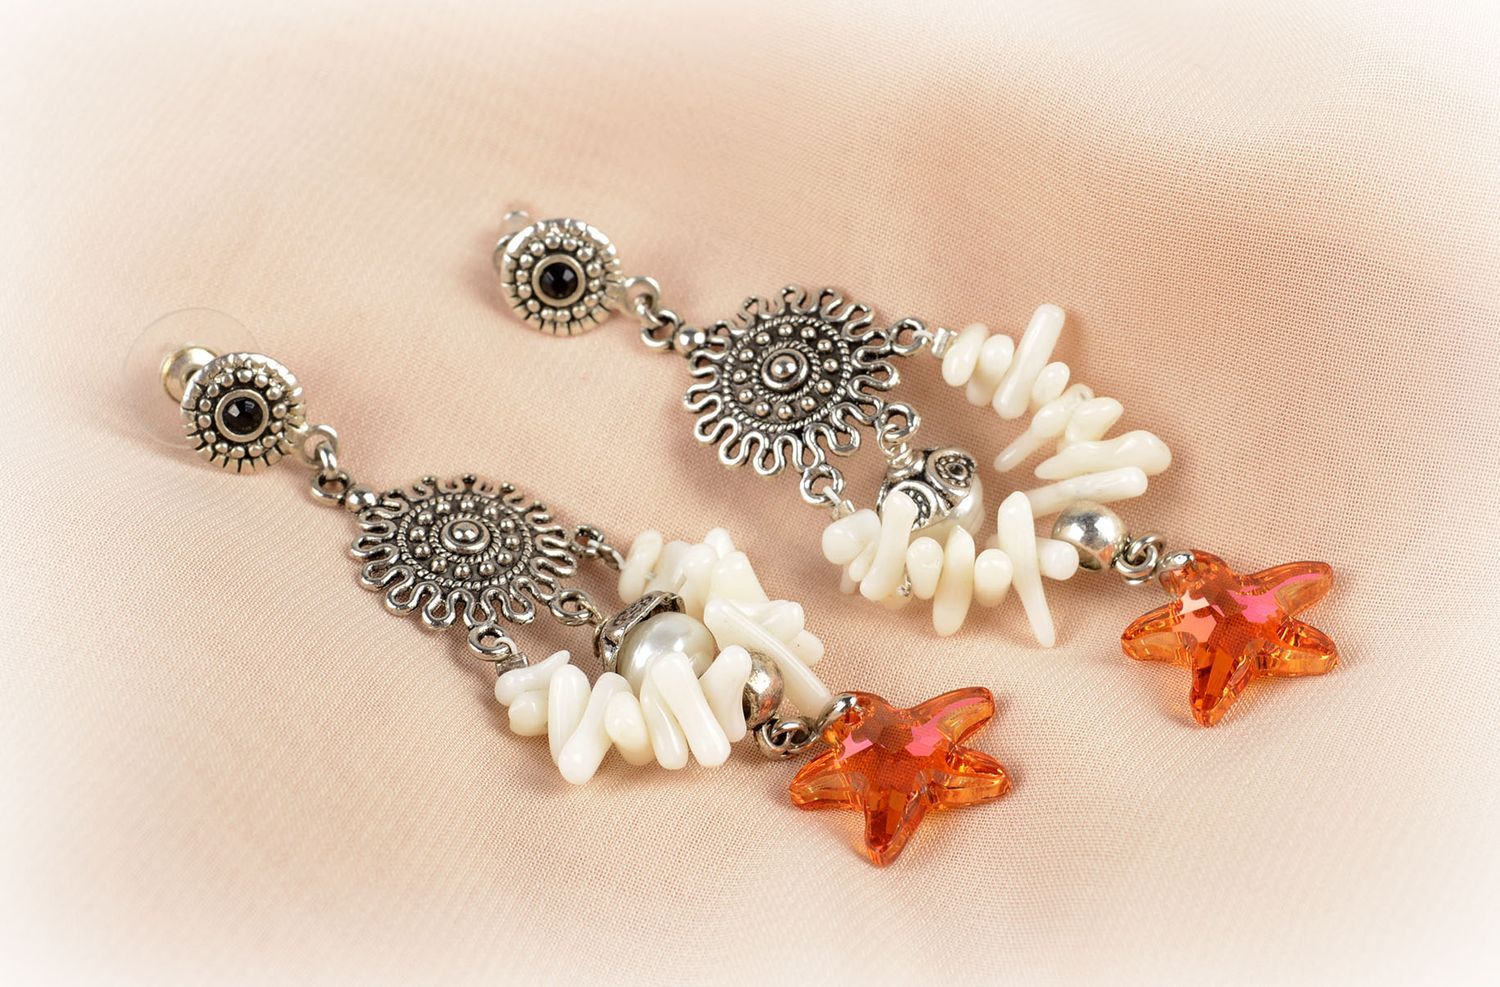 Handmade stone earrings unusual earrings for women gift ideas unusual jewelry photo 5